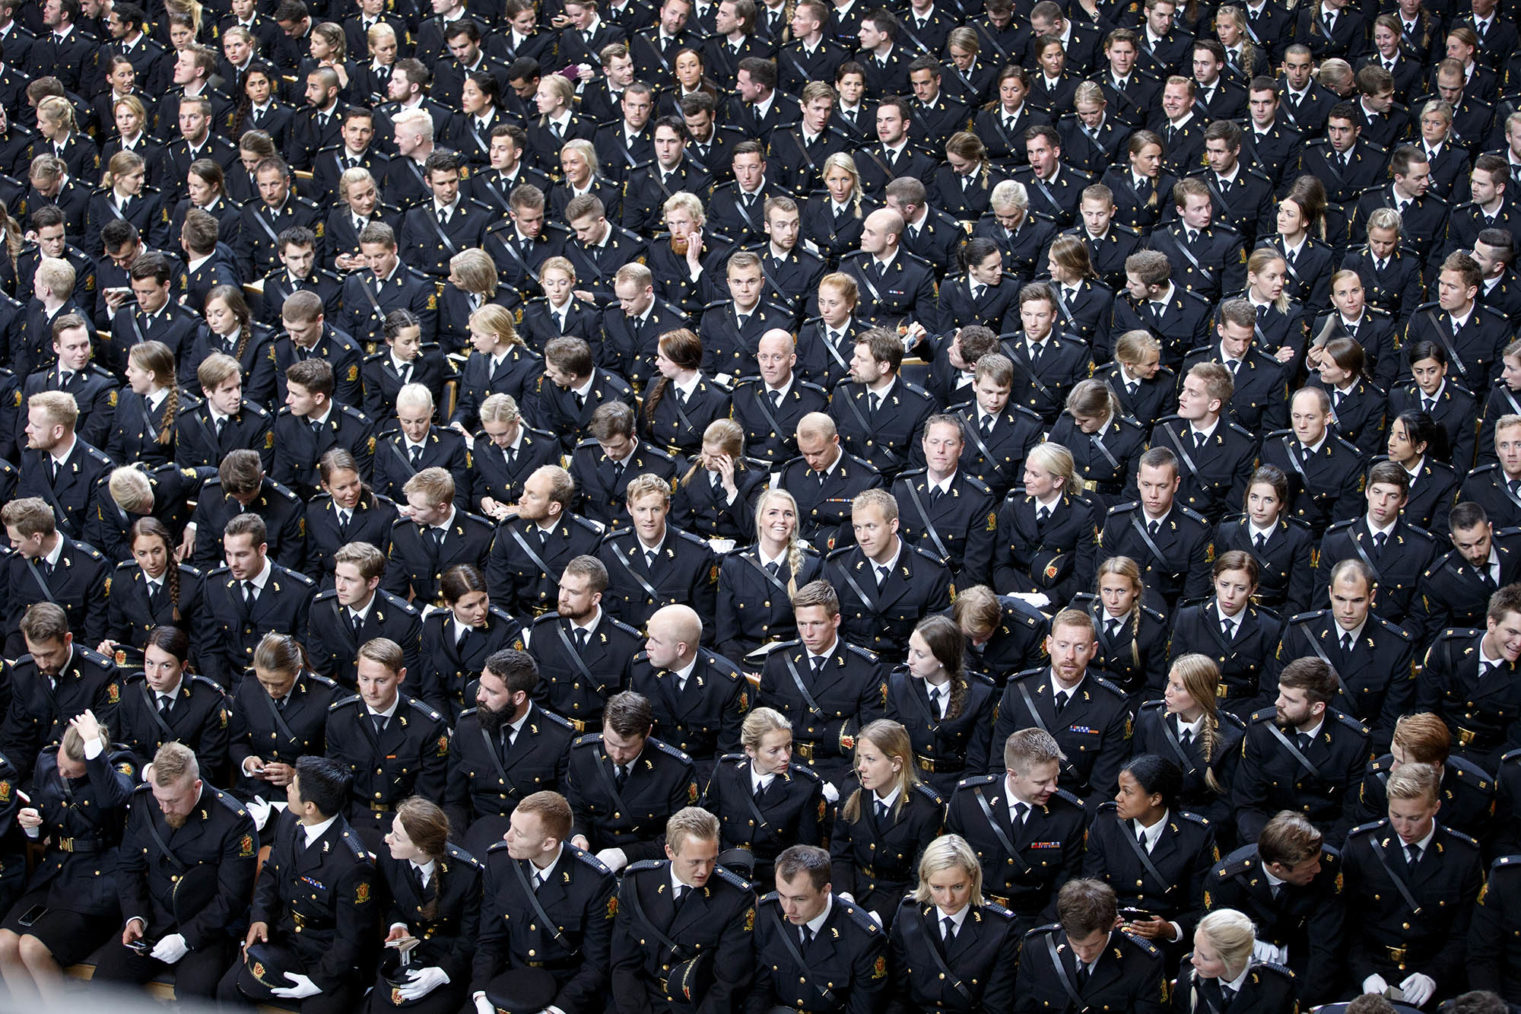 Sal full av politistudenter i uniform fotografert ovenfra.